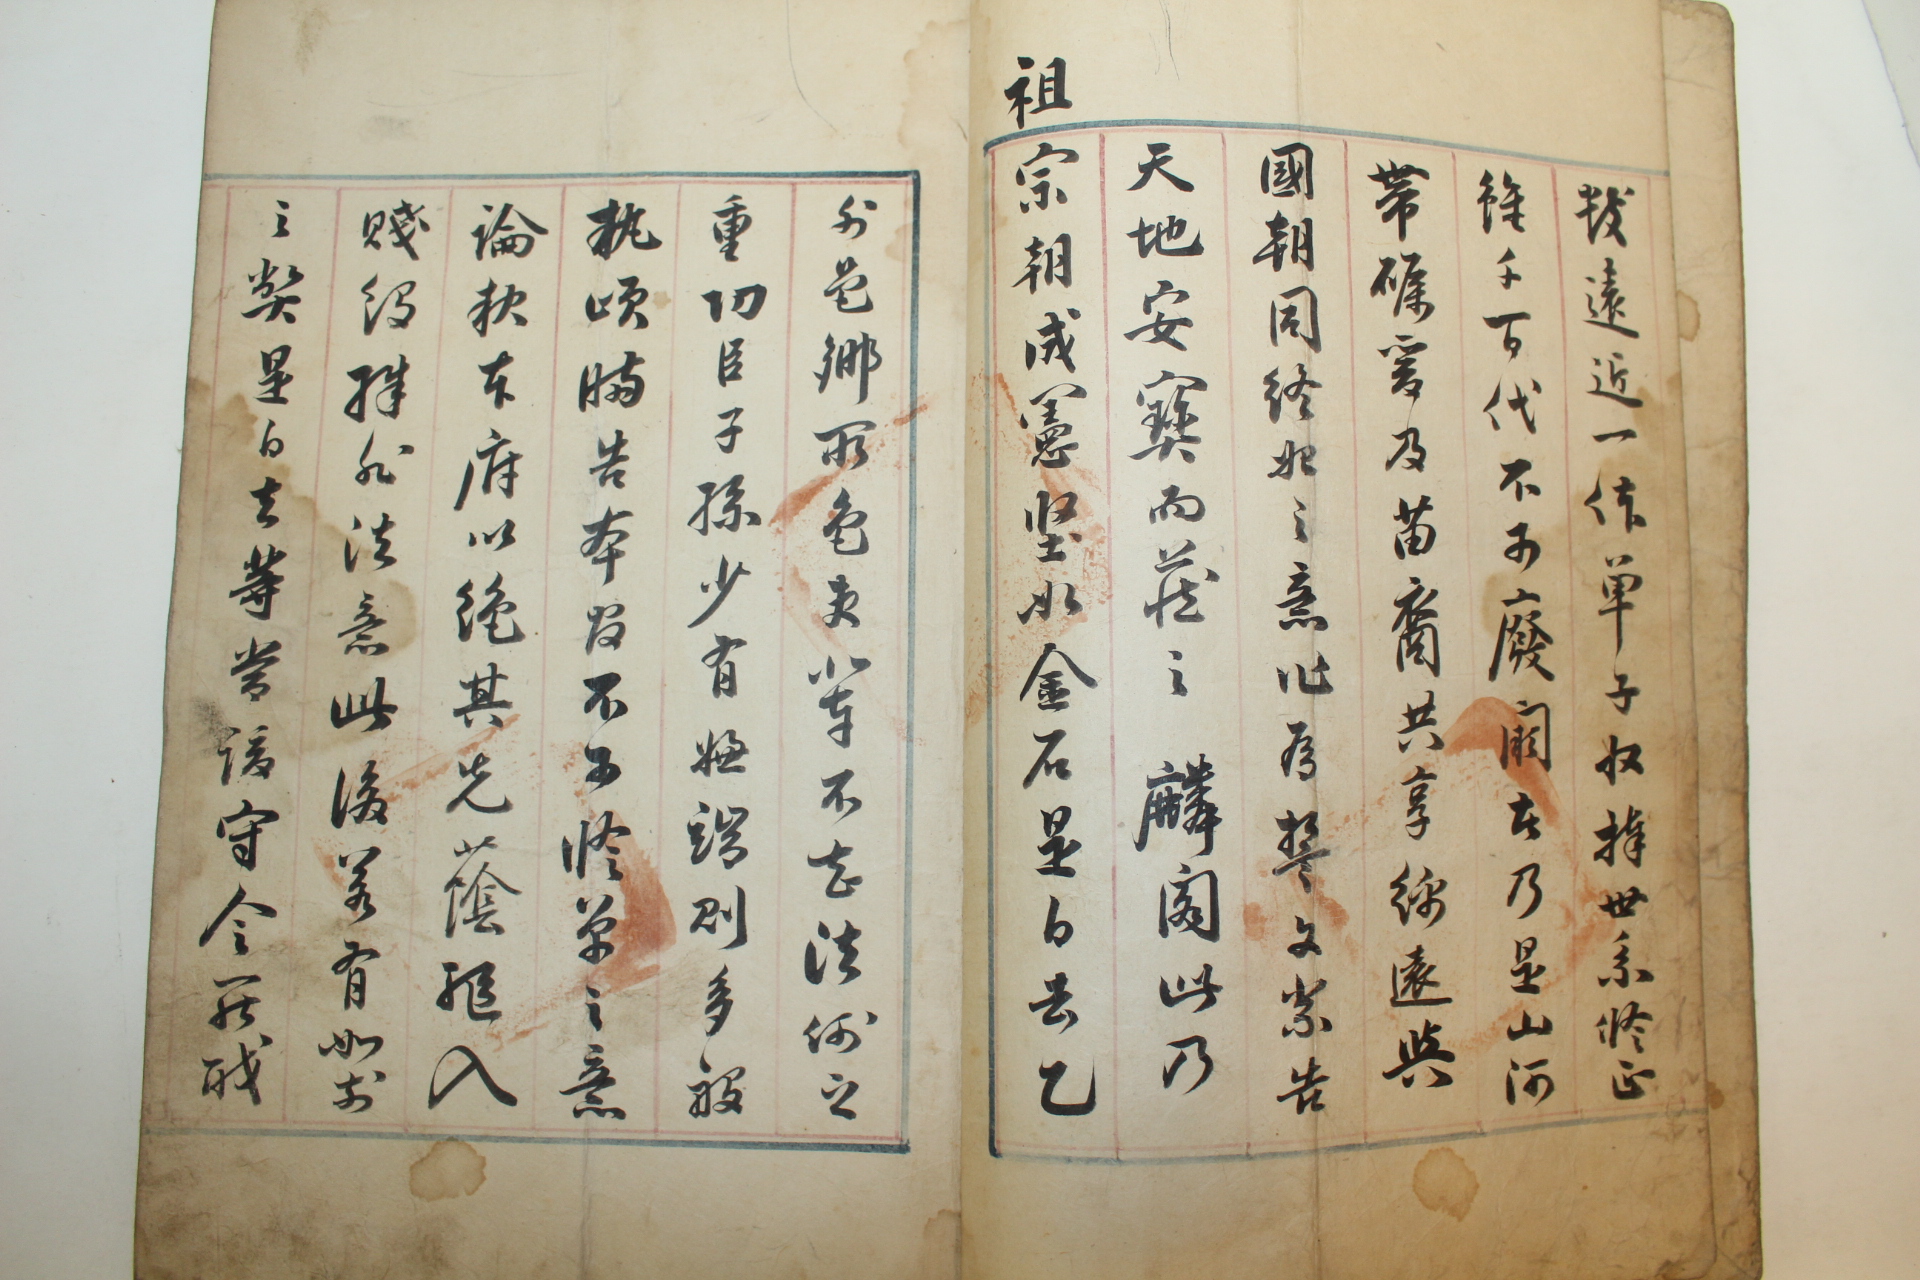 1855년(함풍5년) 계하사목(啓下事目) 1책완질